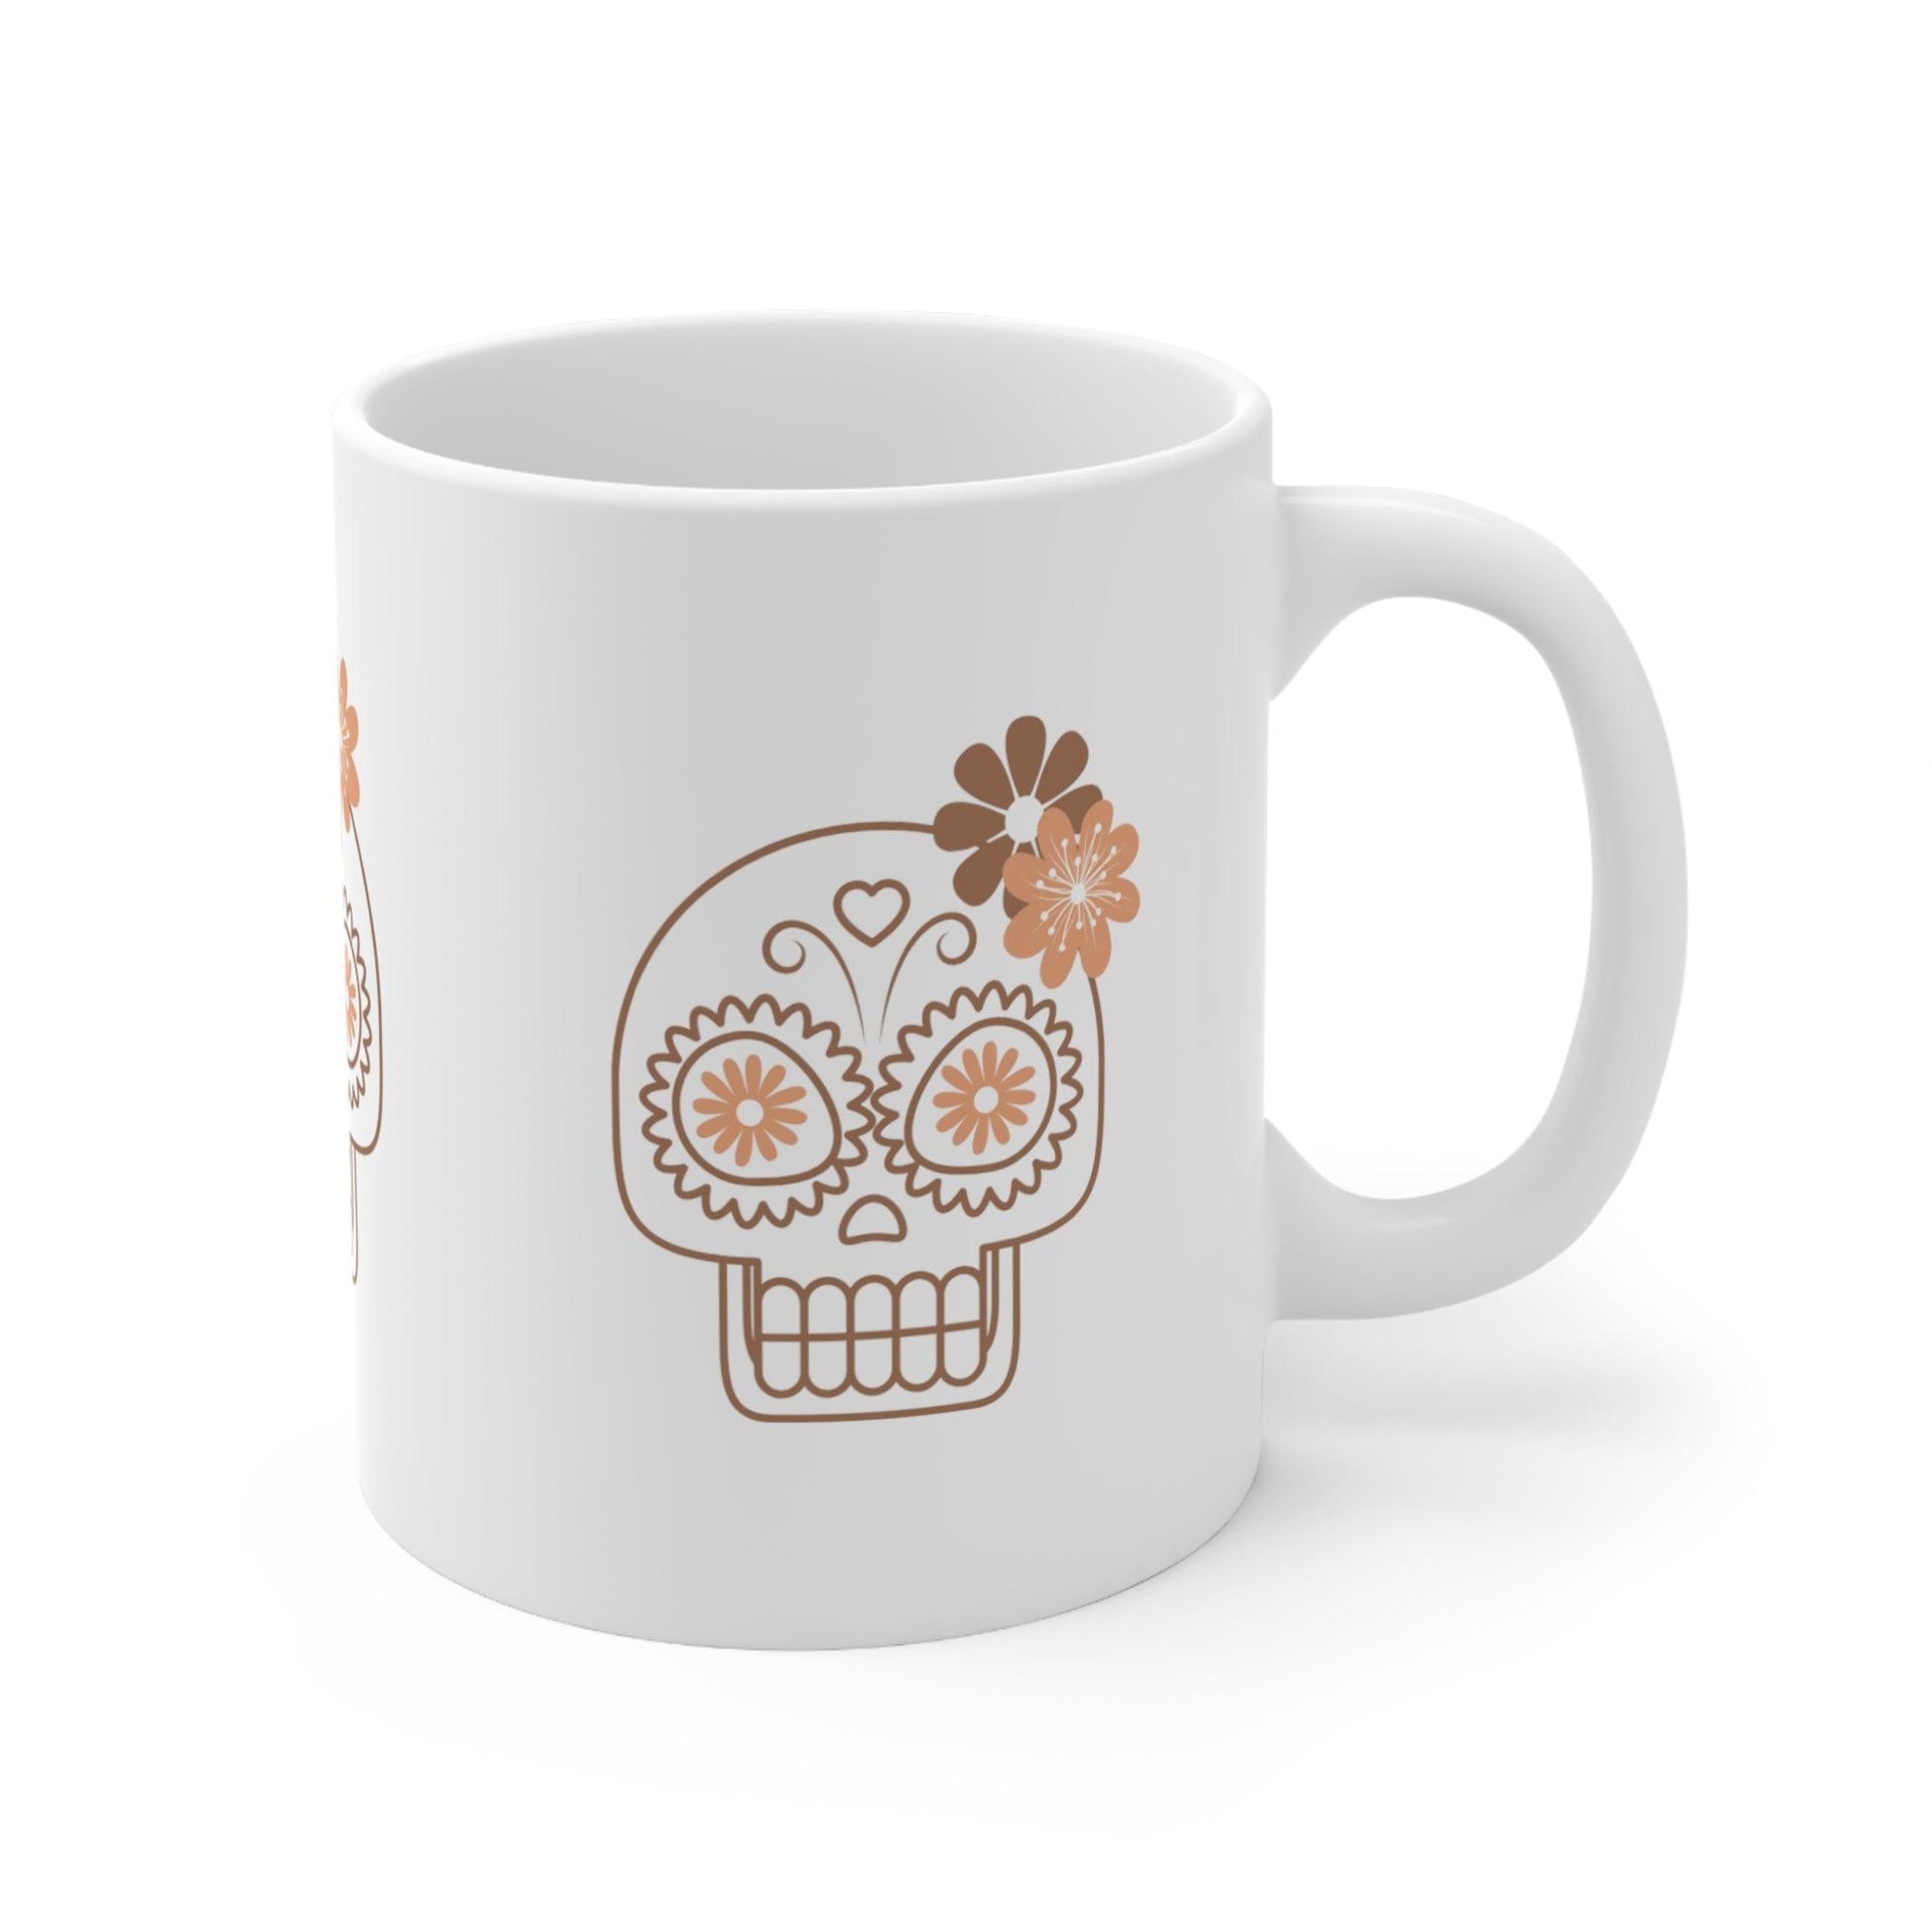 Dia De Los Muertos - Ceramic Mug - The Pura Vida Co.